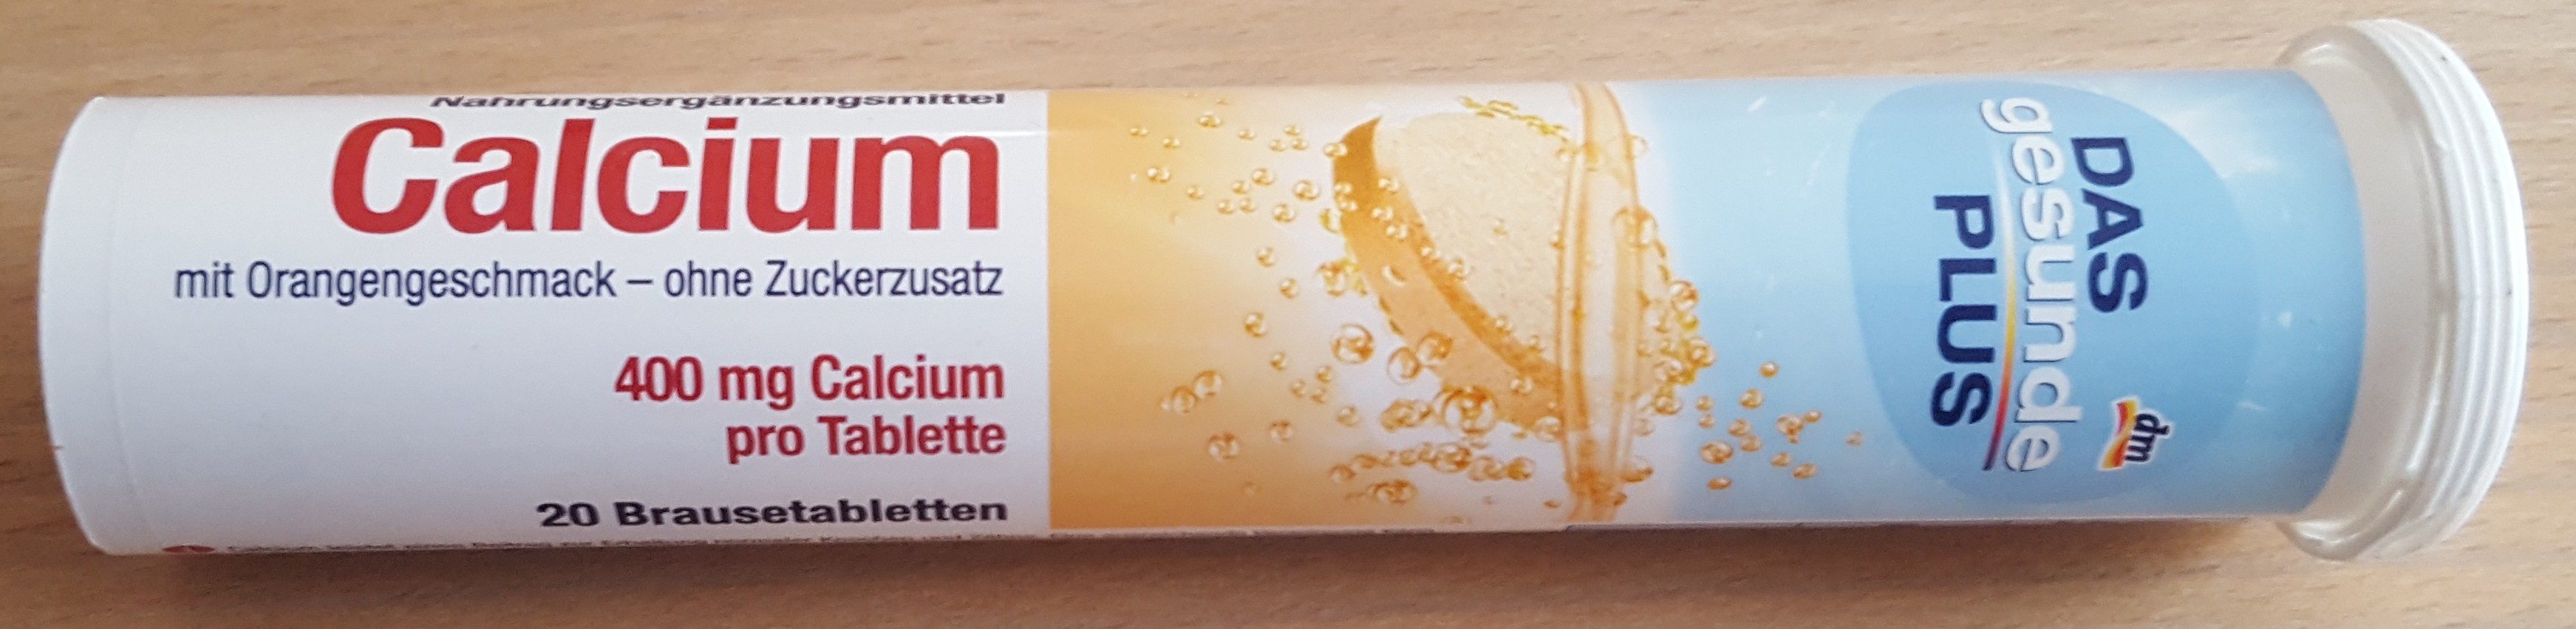 Calcium Brausetabletten mit Orangengeschmack - Product - de